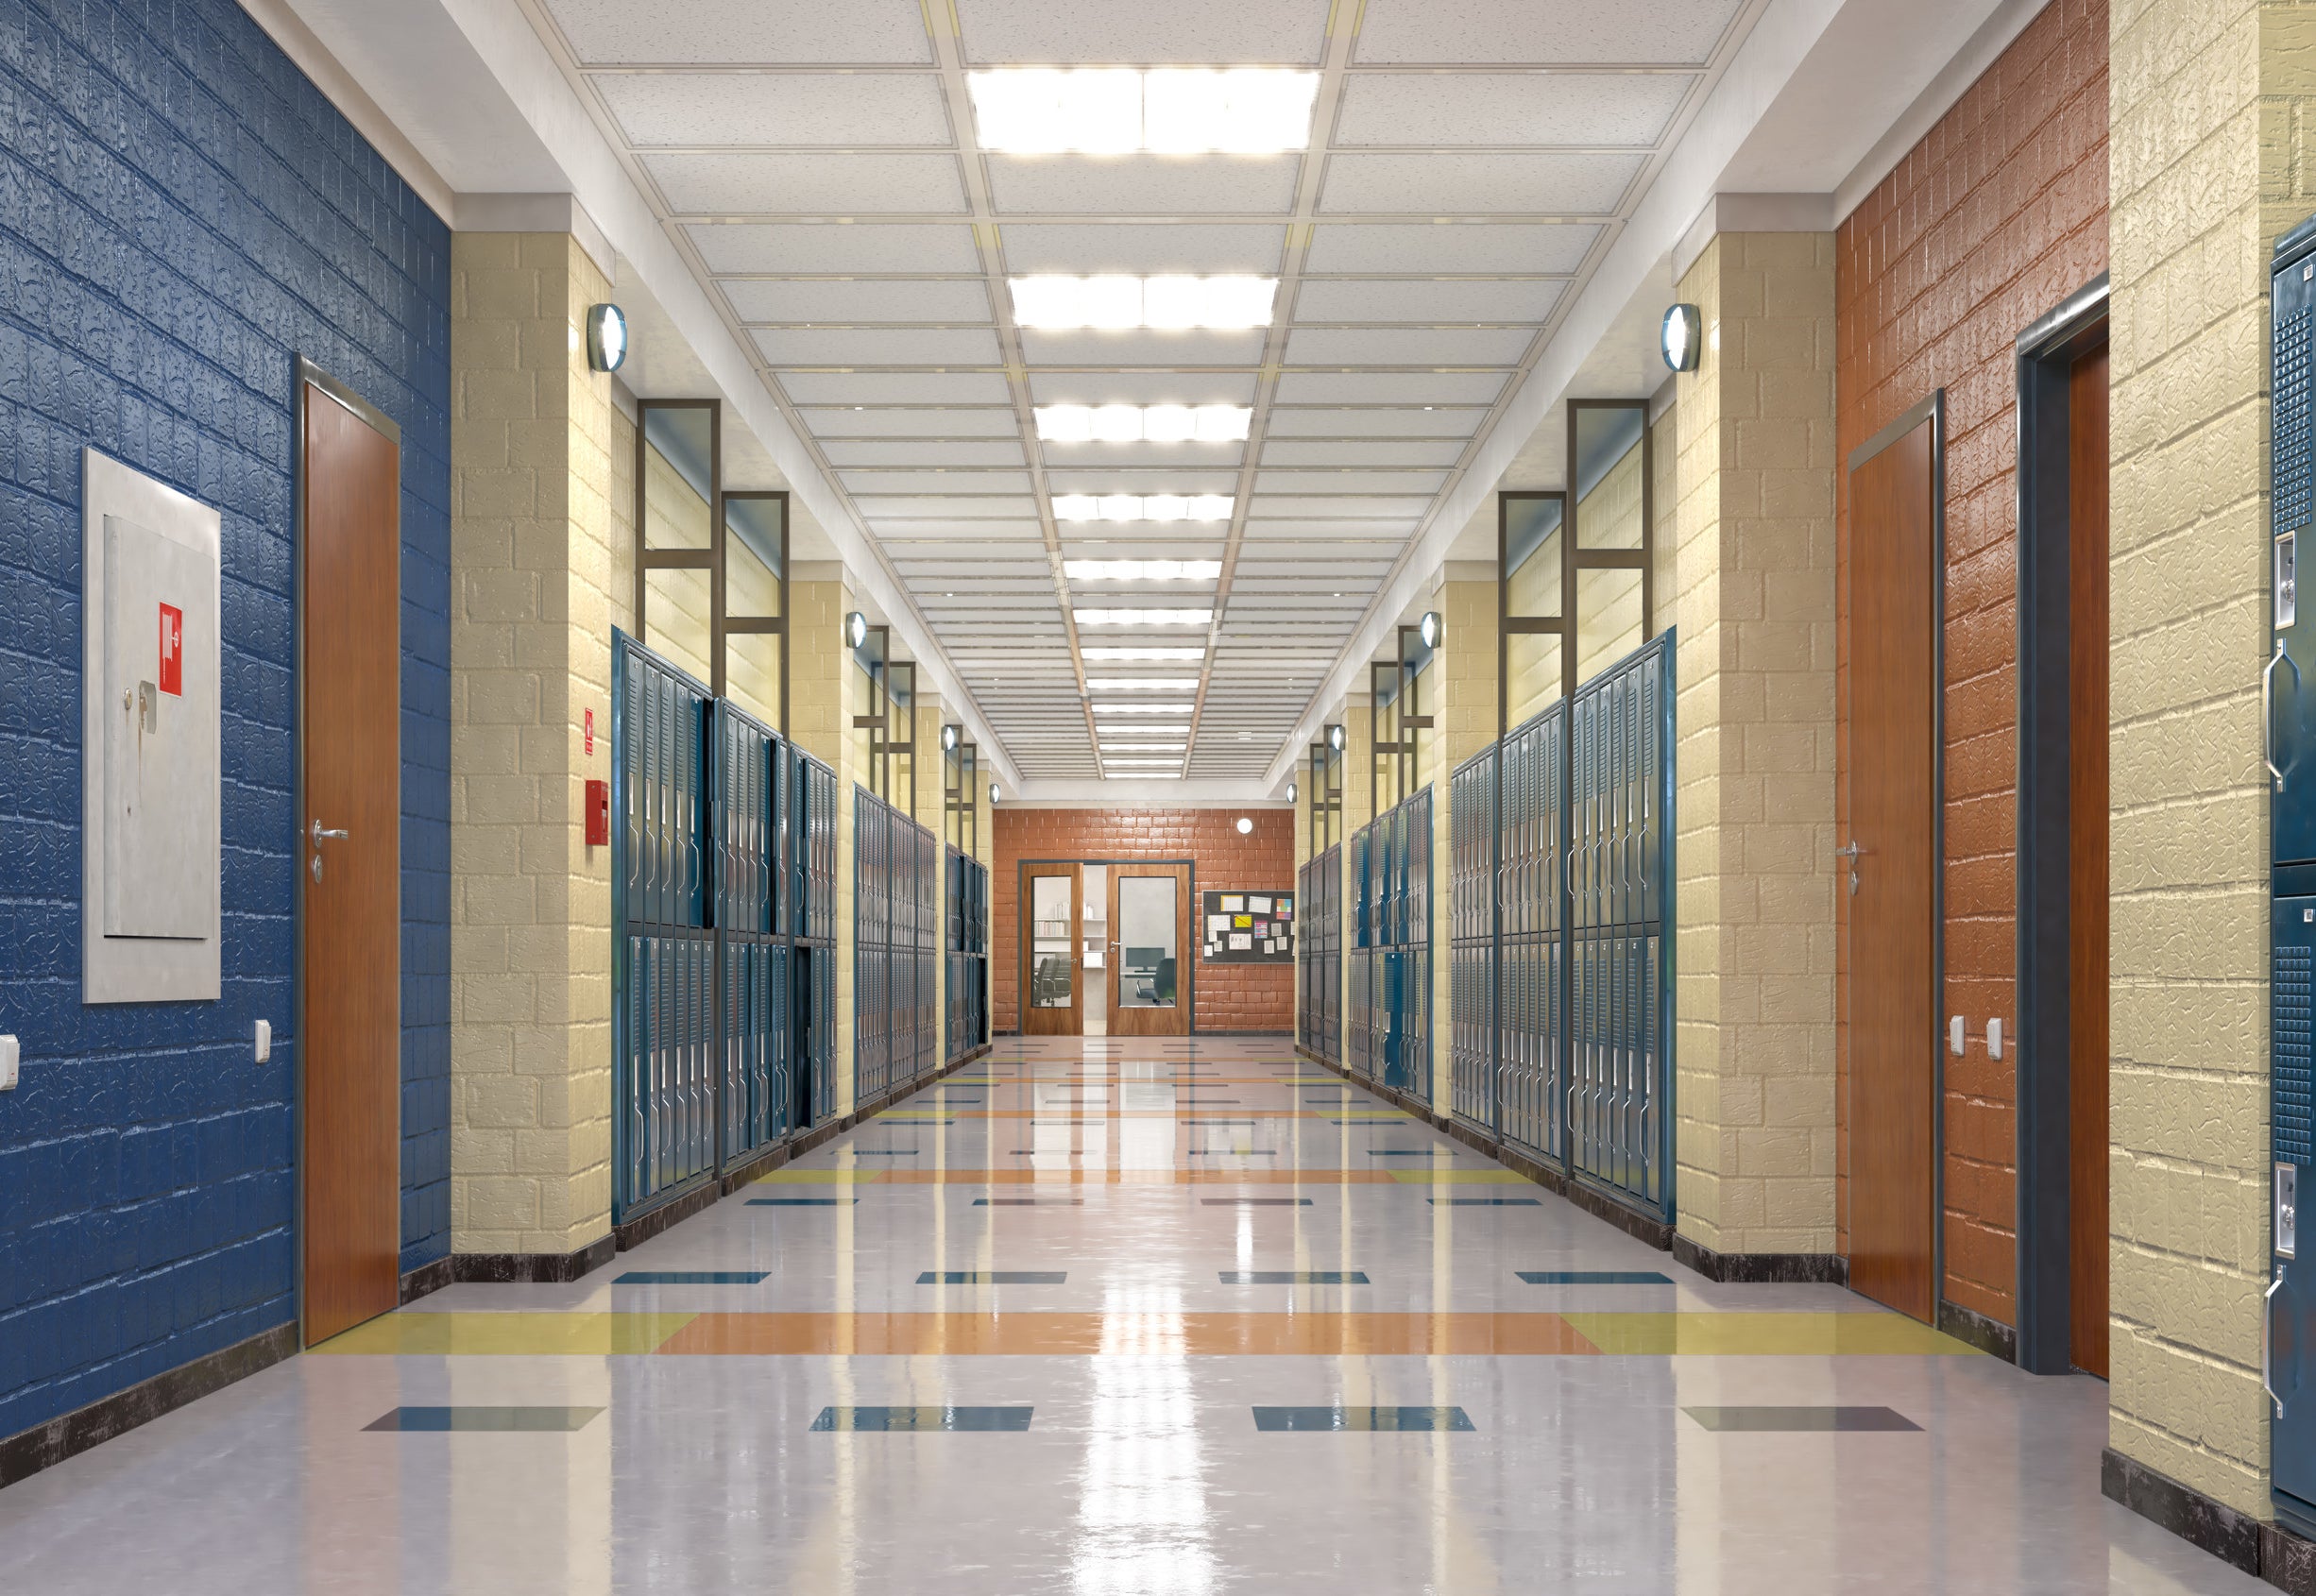 school corridor with lockers